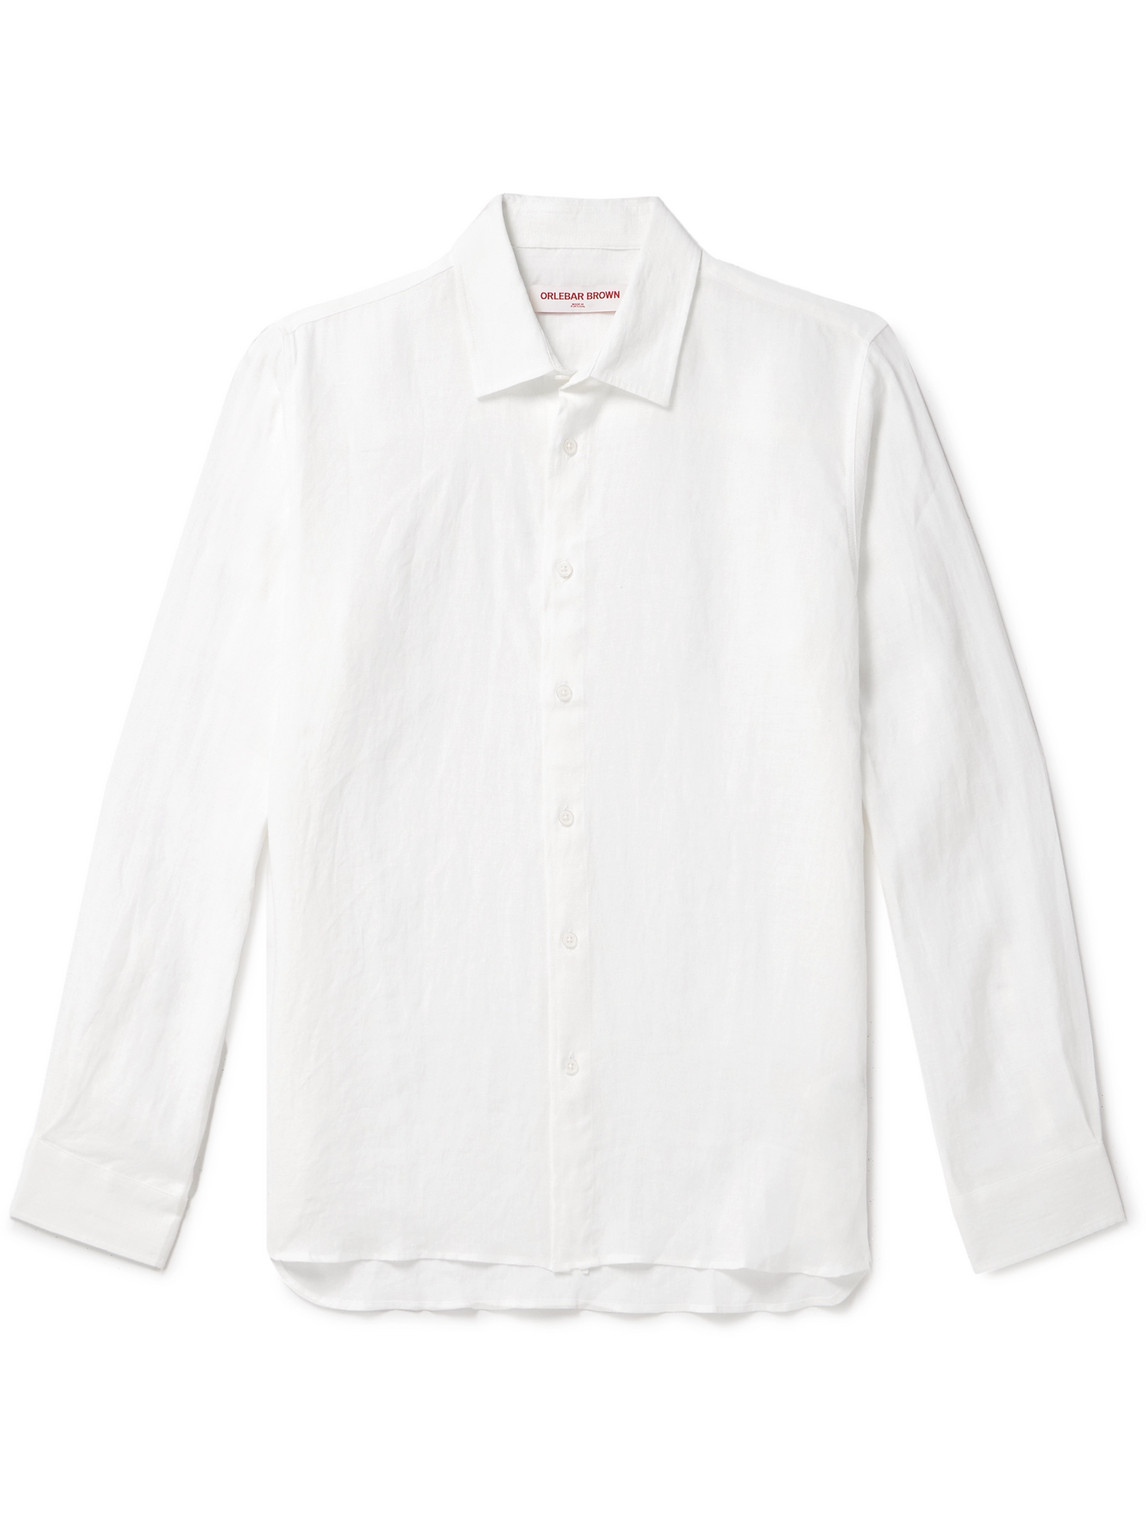 Orlebar Brown - Justin Linen Shirt - Men - White - S von Orlebar Brown